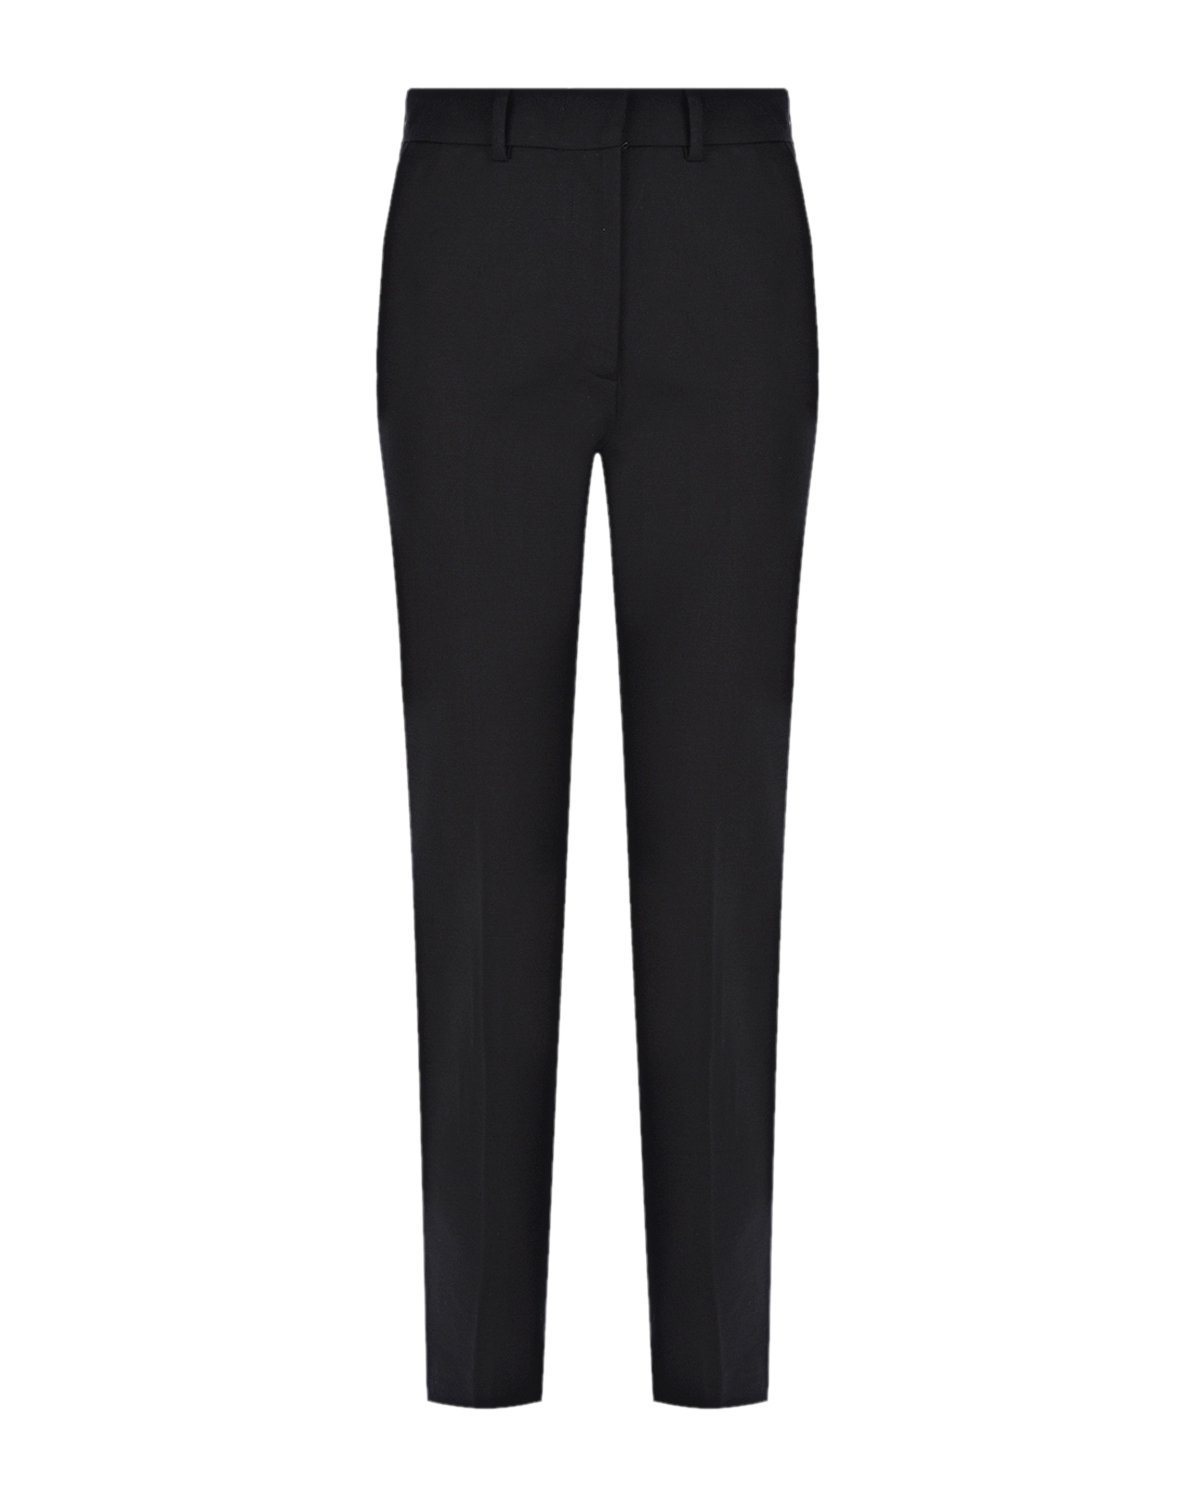 Черные брюки Coleman Joseph, размер 40, цвет черный - фото 1